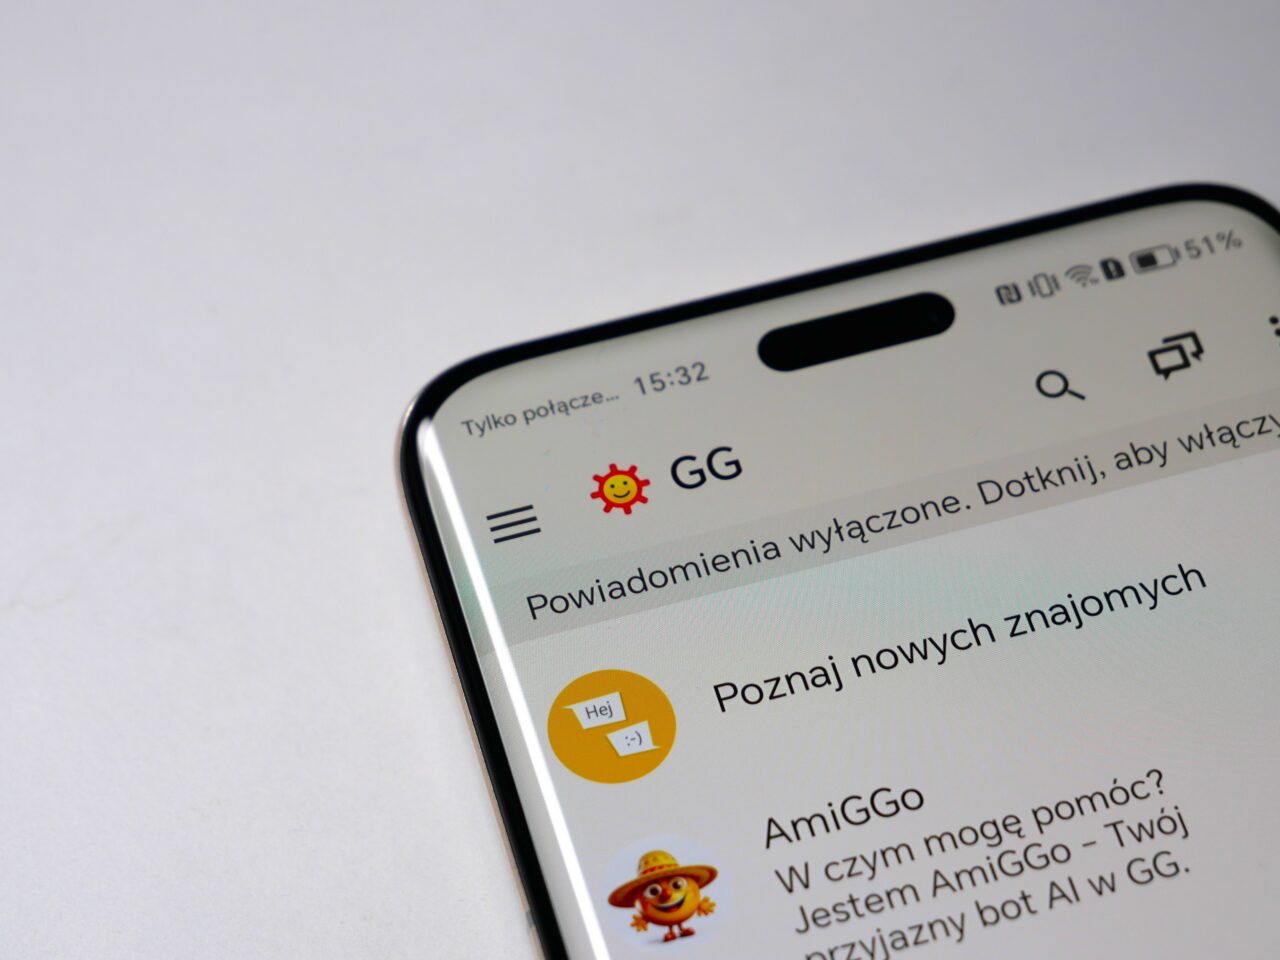 Ekran smartfona z otwartą aplikacją komunikacyjną GG, pokazującą komunikaty i ikonę powiadomienia.